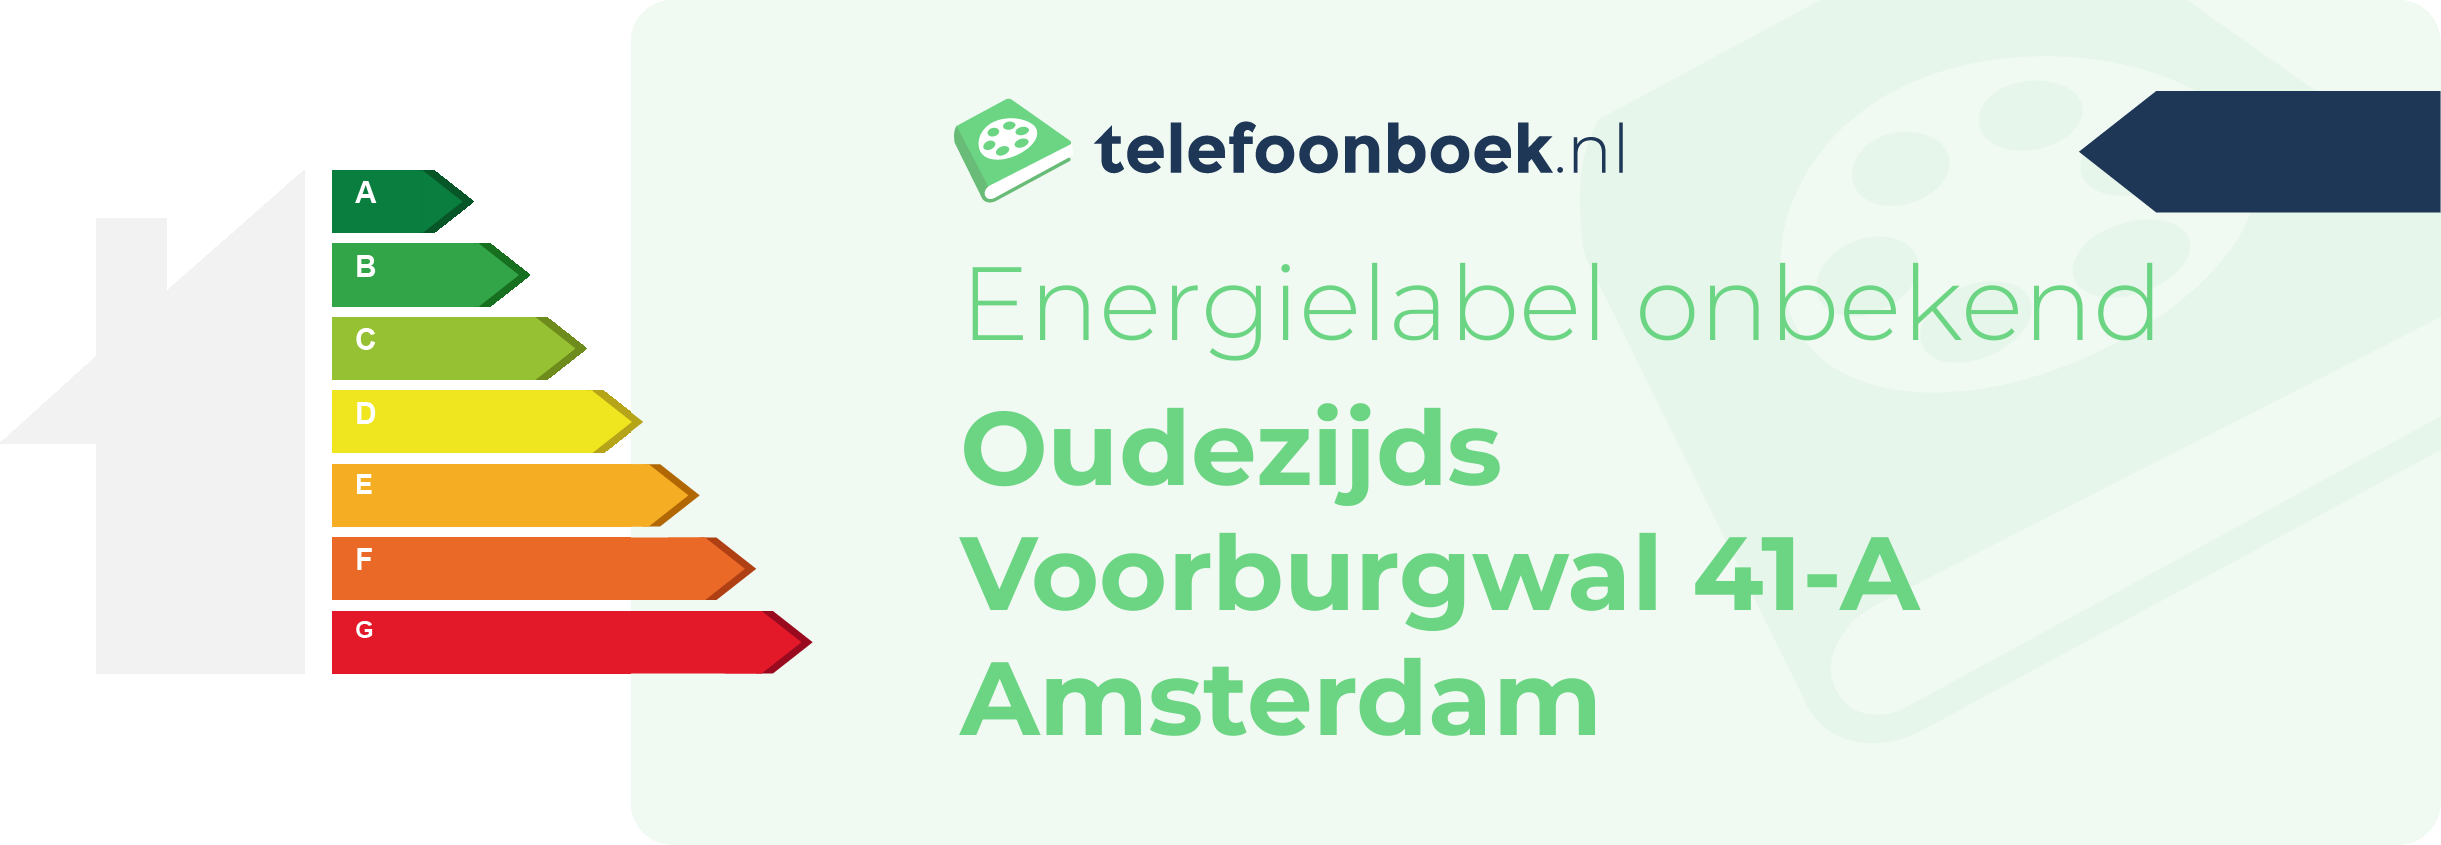 Energielabel Oudezijds Voorburgwal 41-A Amsterdam